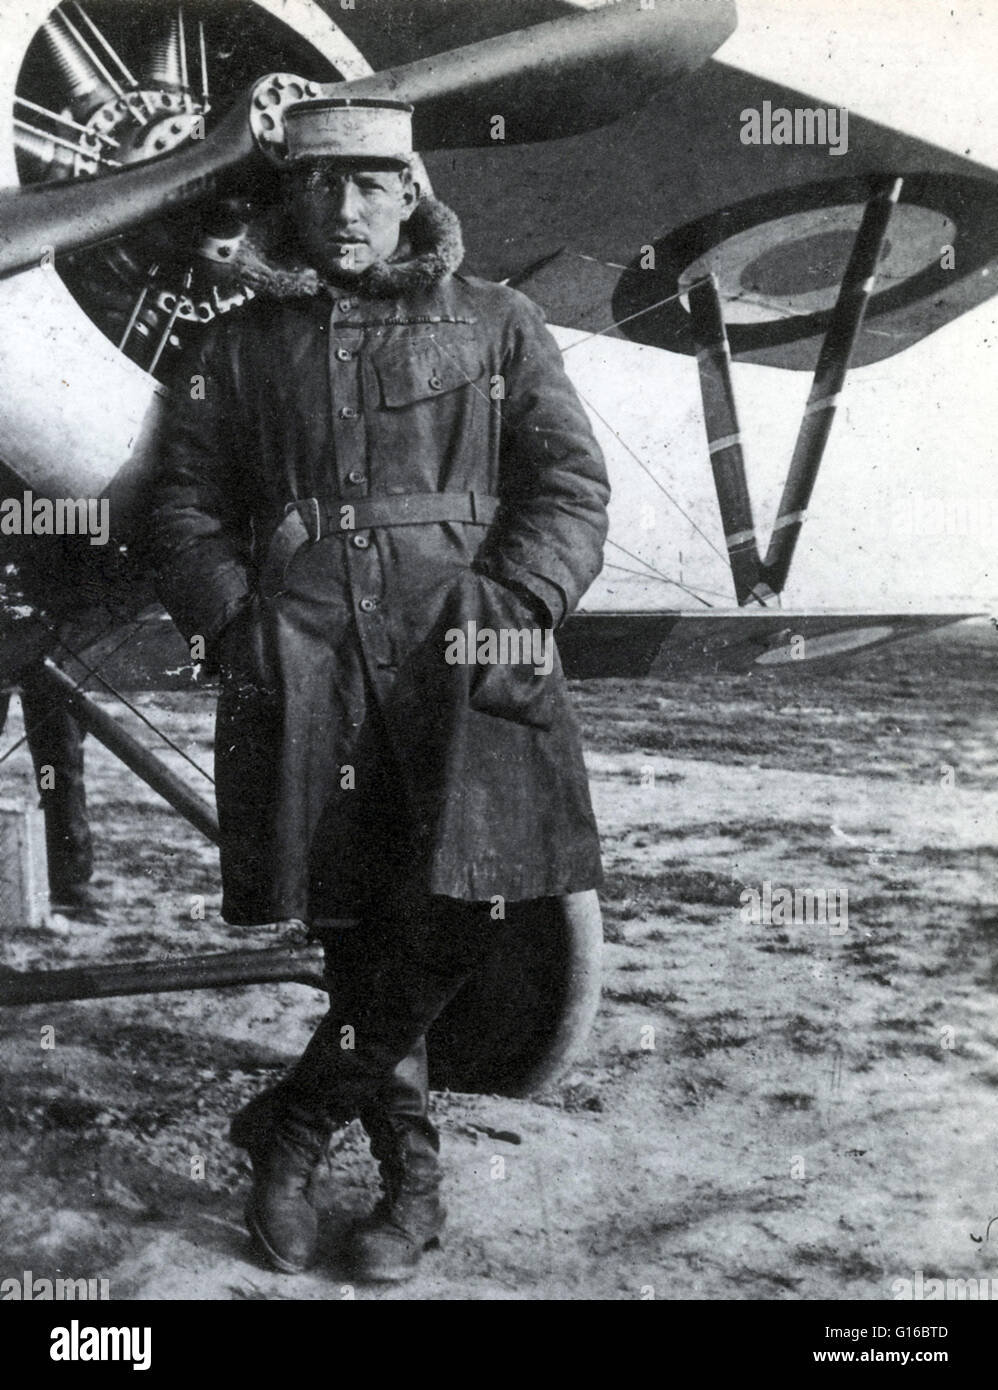 Charles Eugène Jules Marie Nungesser (Marzo 15, 1892 - 8 Maggio 1927) è stata una prima guerra mondiale francese flying ace rating terza più alta nel paese per il combattimento aereo vittorie. Egli ha viaggiato in Sud America dove ha lavorato come un meccanico automatico prima di diventare un p Foto Stock